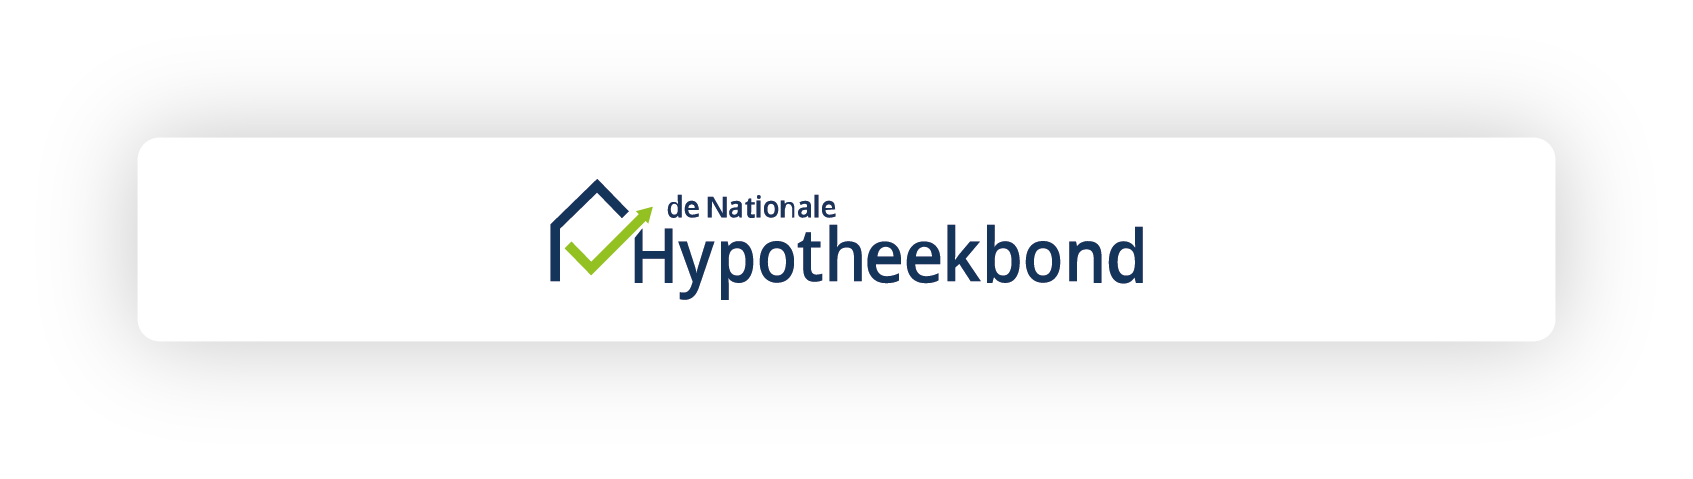 Nationale Hypotheekbond koppeling